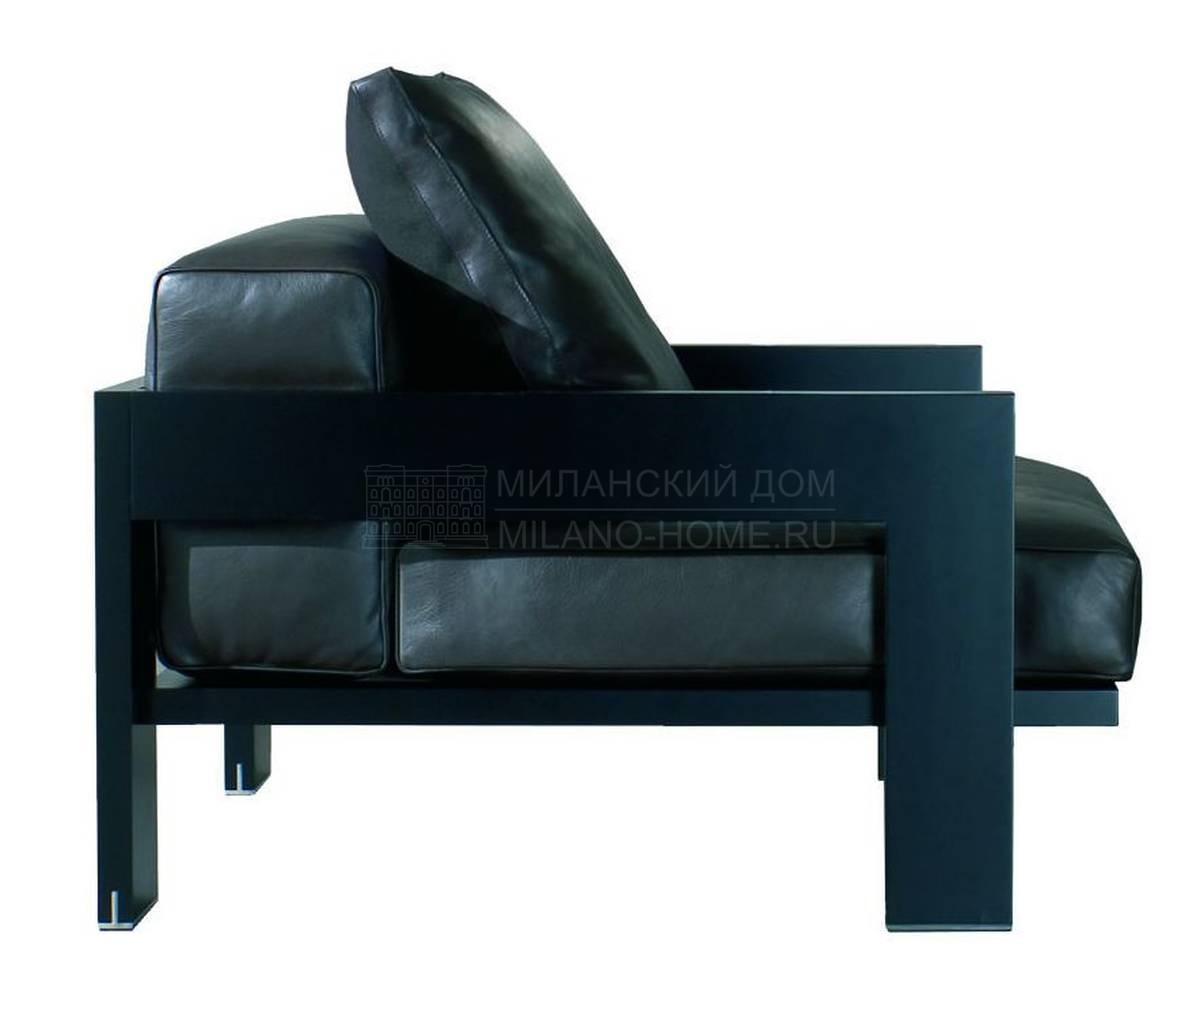 Кресло Alison Black Lac Armchair из Италии фабрики MINOTTI